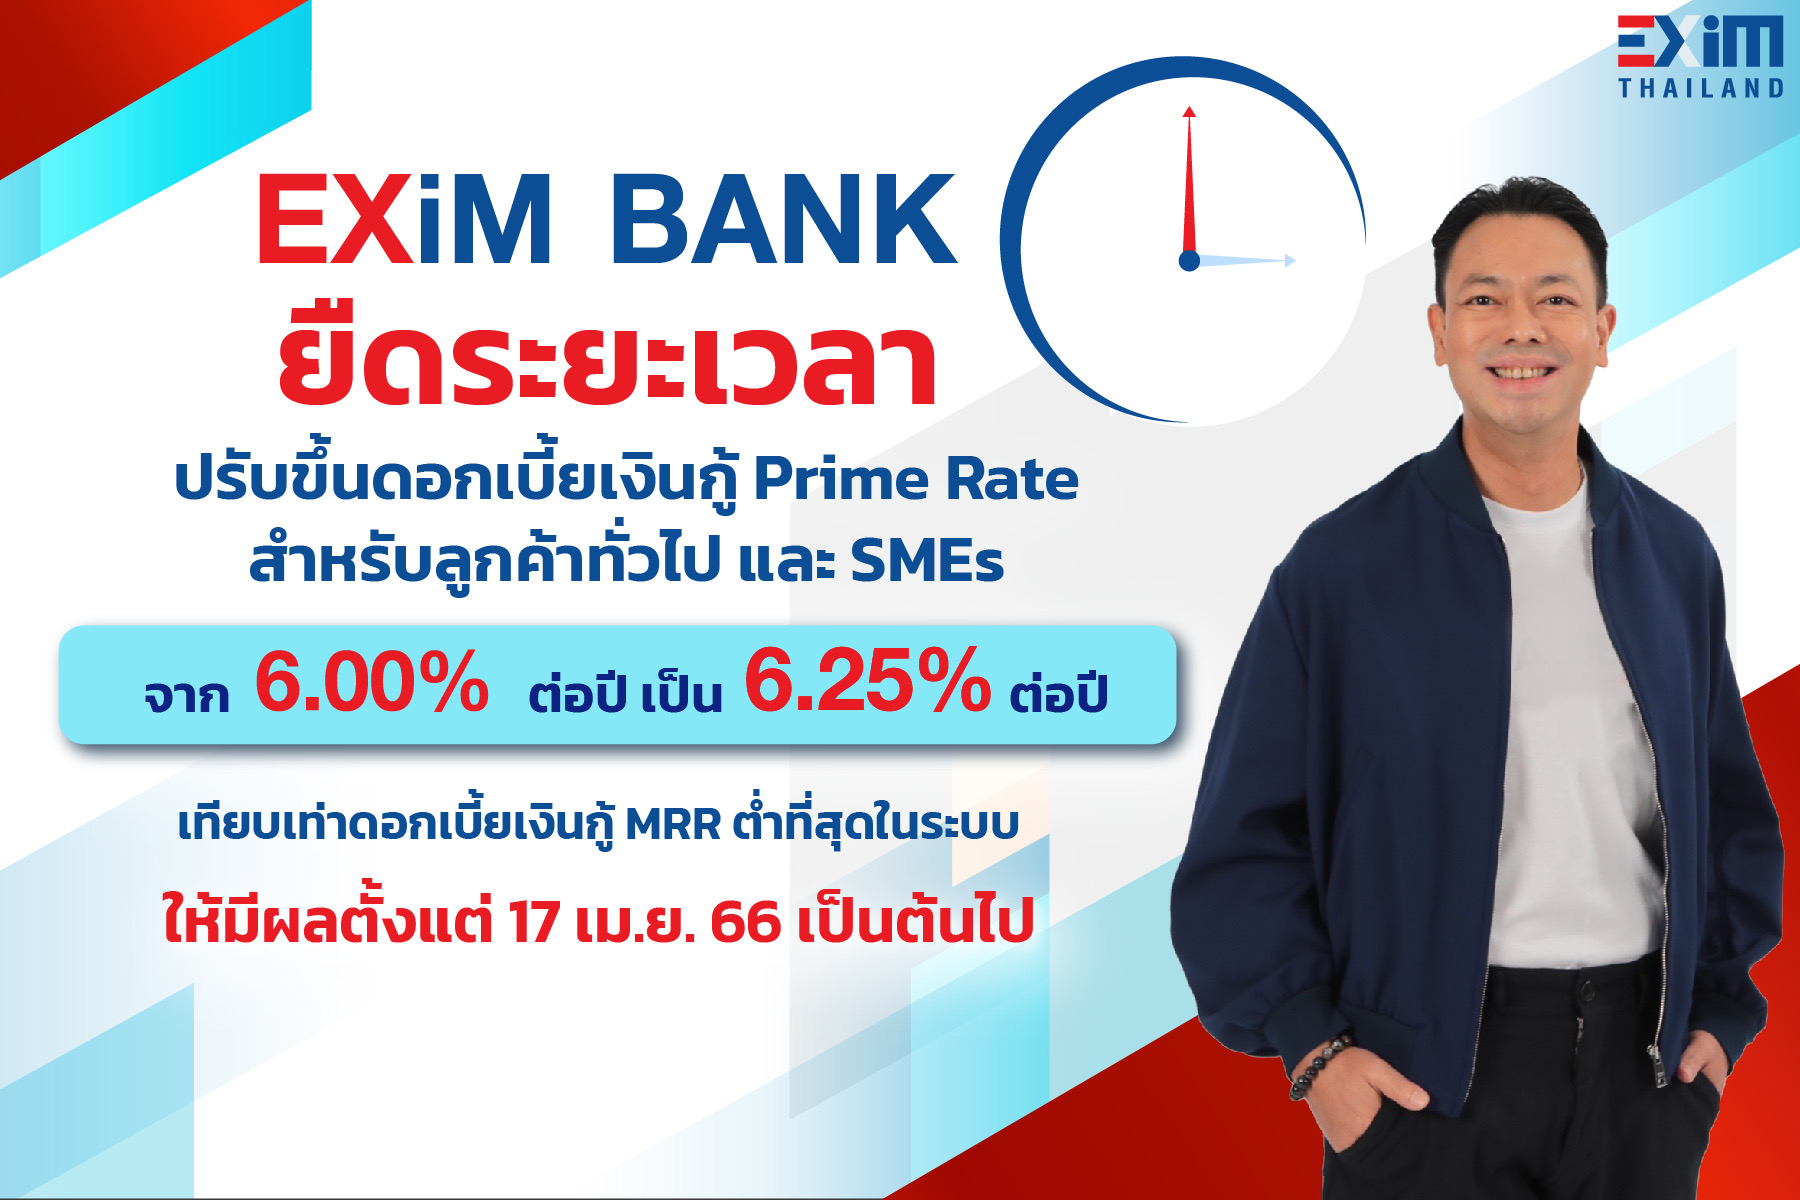 EXIM BANK ยืดระยะเวลาขึ้นอัตราดอกเบี้ยเงินกู้ถึง 17 เม.ย. นี้ คงจุดยืน “กล้า พัฒนาเพื่อคนไทย” ด้วยอัตราดอกเบี้ยต่ำสุดในระบบ